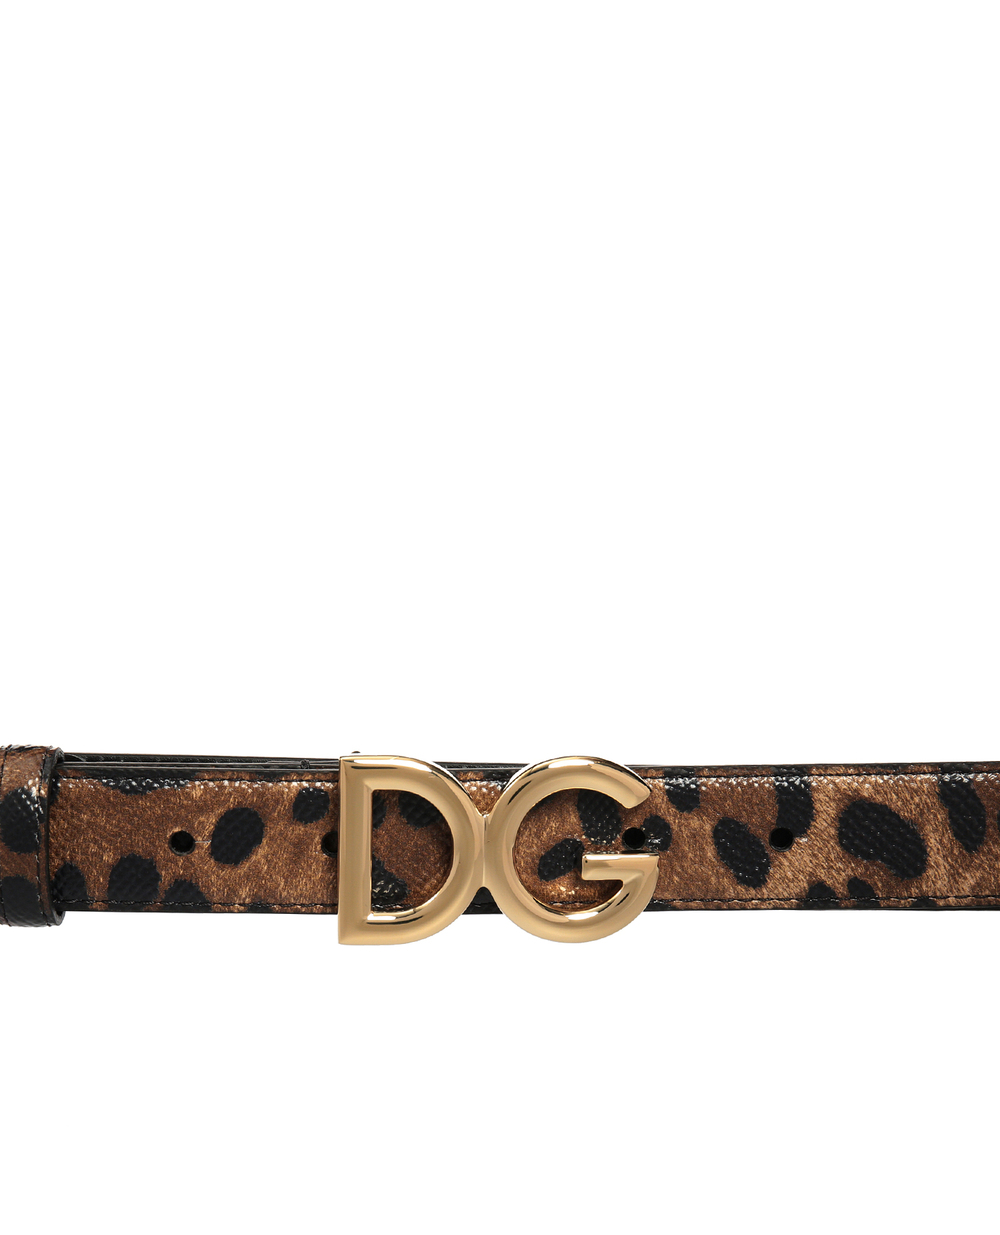 Кожаный ремень Dolce&Gabbana BE1297-AI915, коричневый цвет • Купить в интернет-магазине Kameron